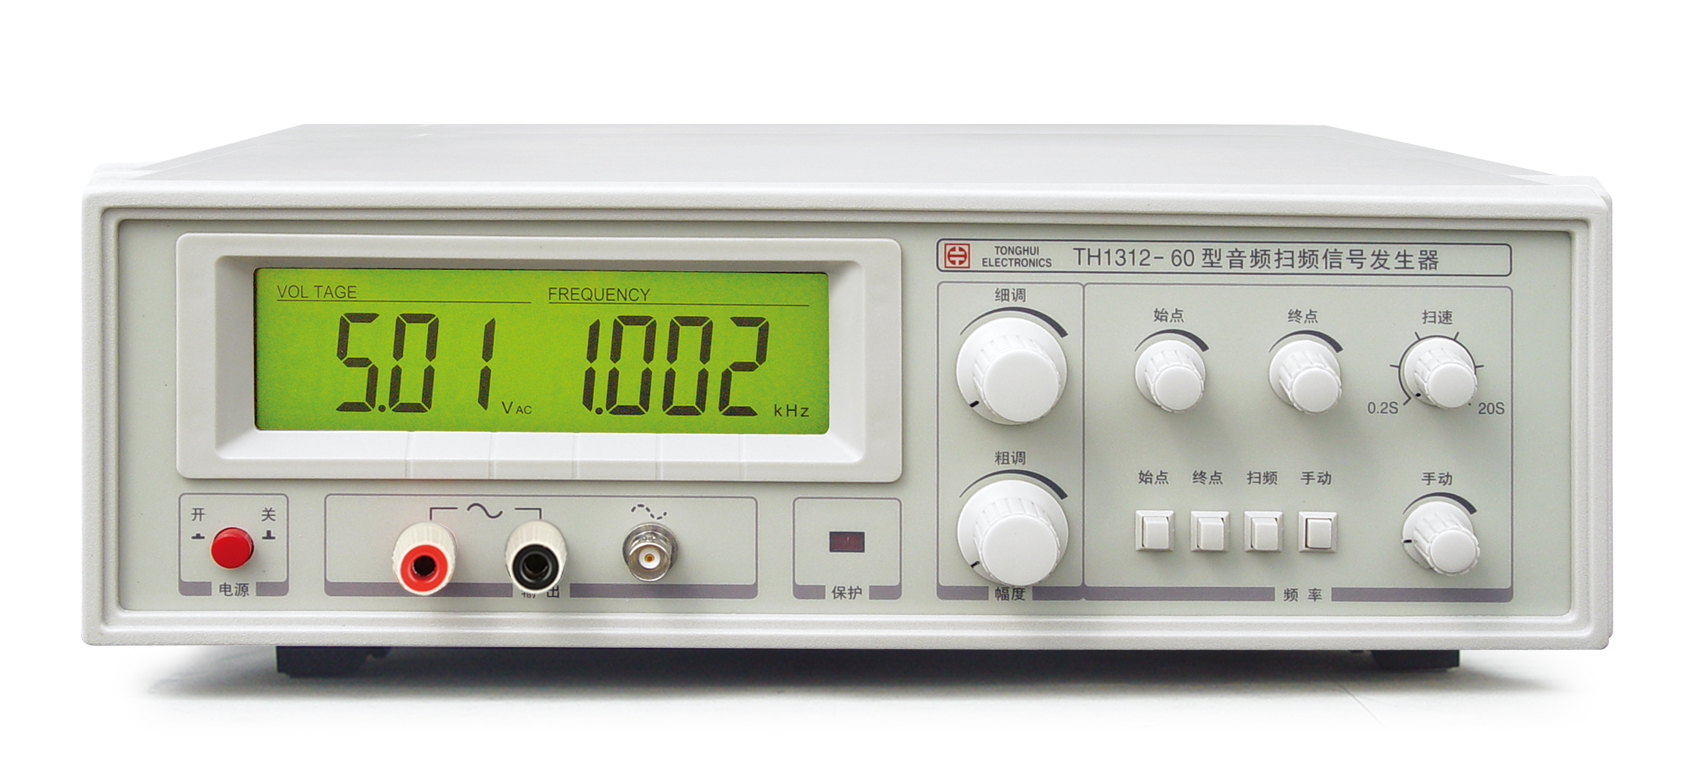 供应四川TH1312-60音频扫频信号发生器销售、价格、批发、哪家好、热线电话